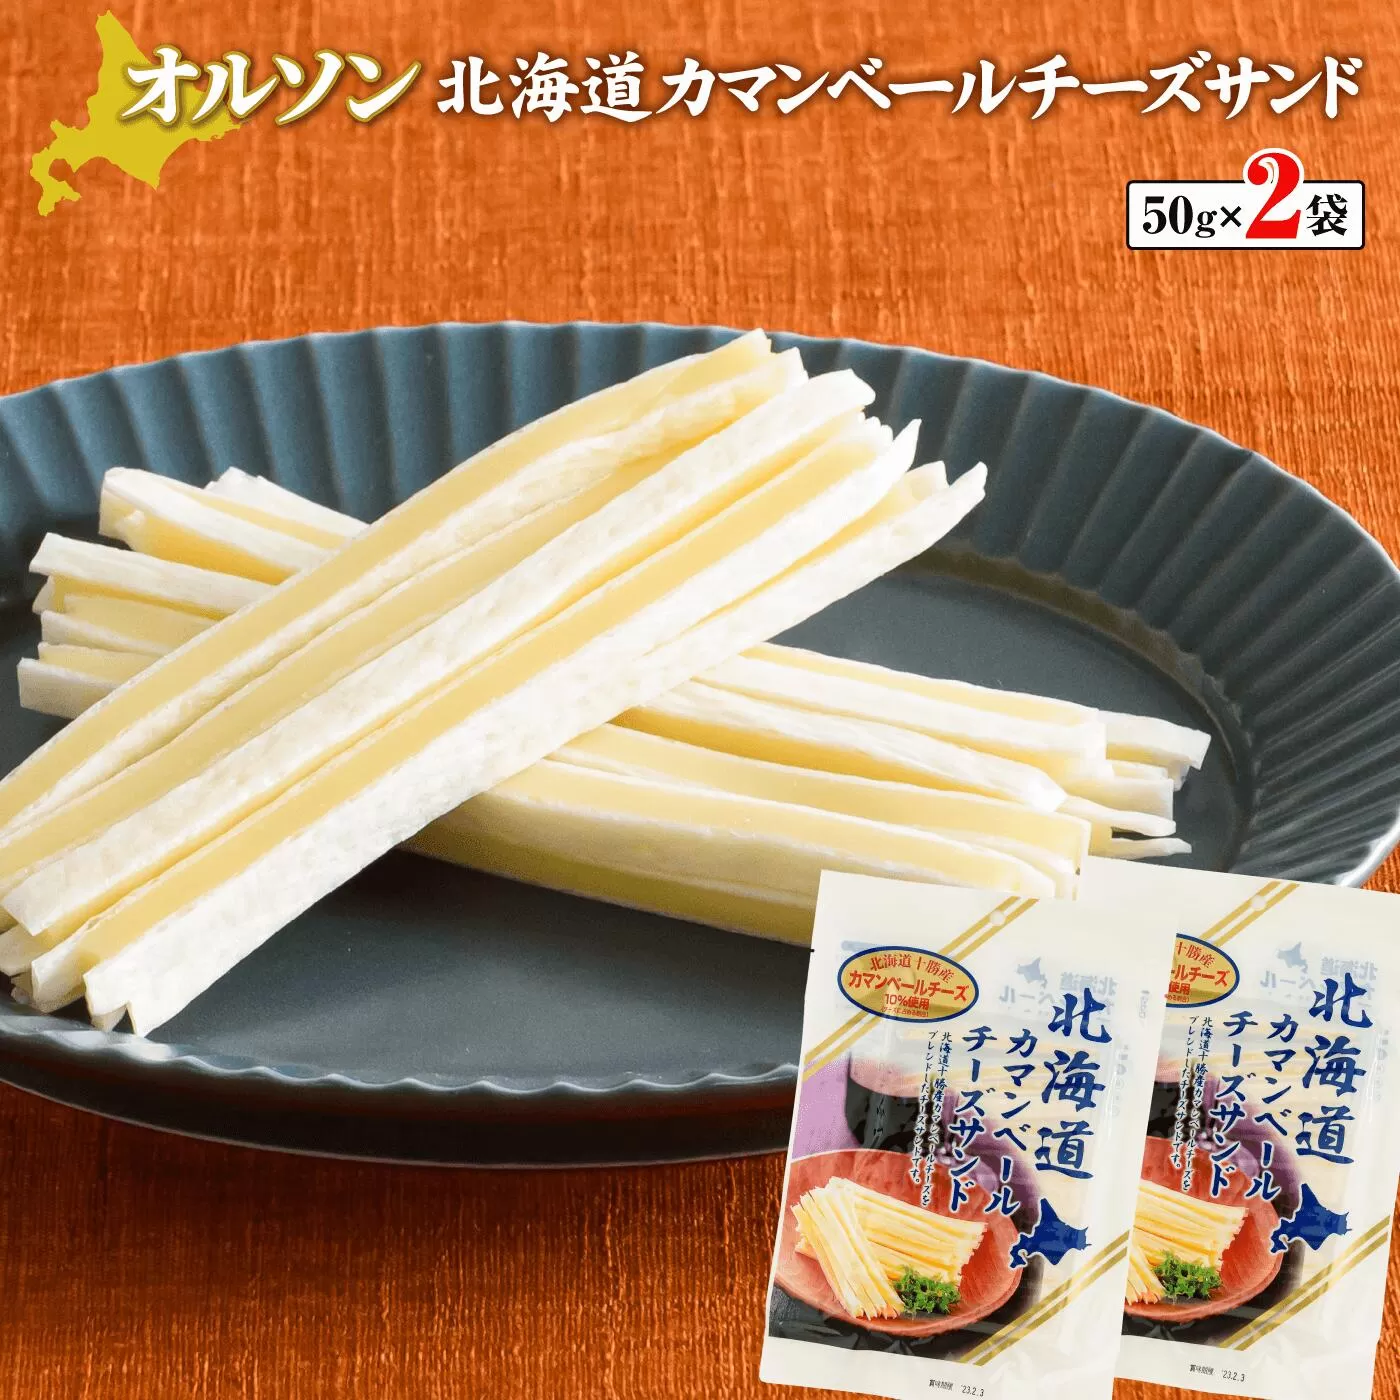 北海道カマンベールチーズサンド 50g×2袋《北海道恵庭市》【04010】